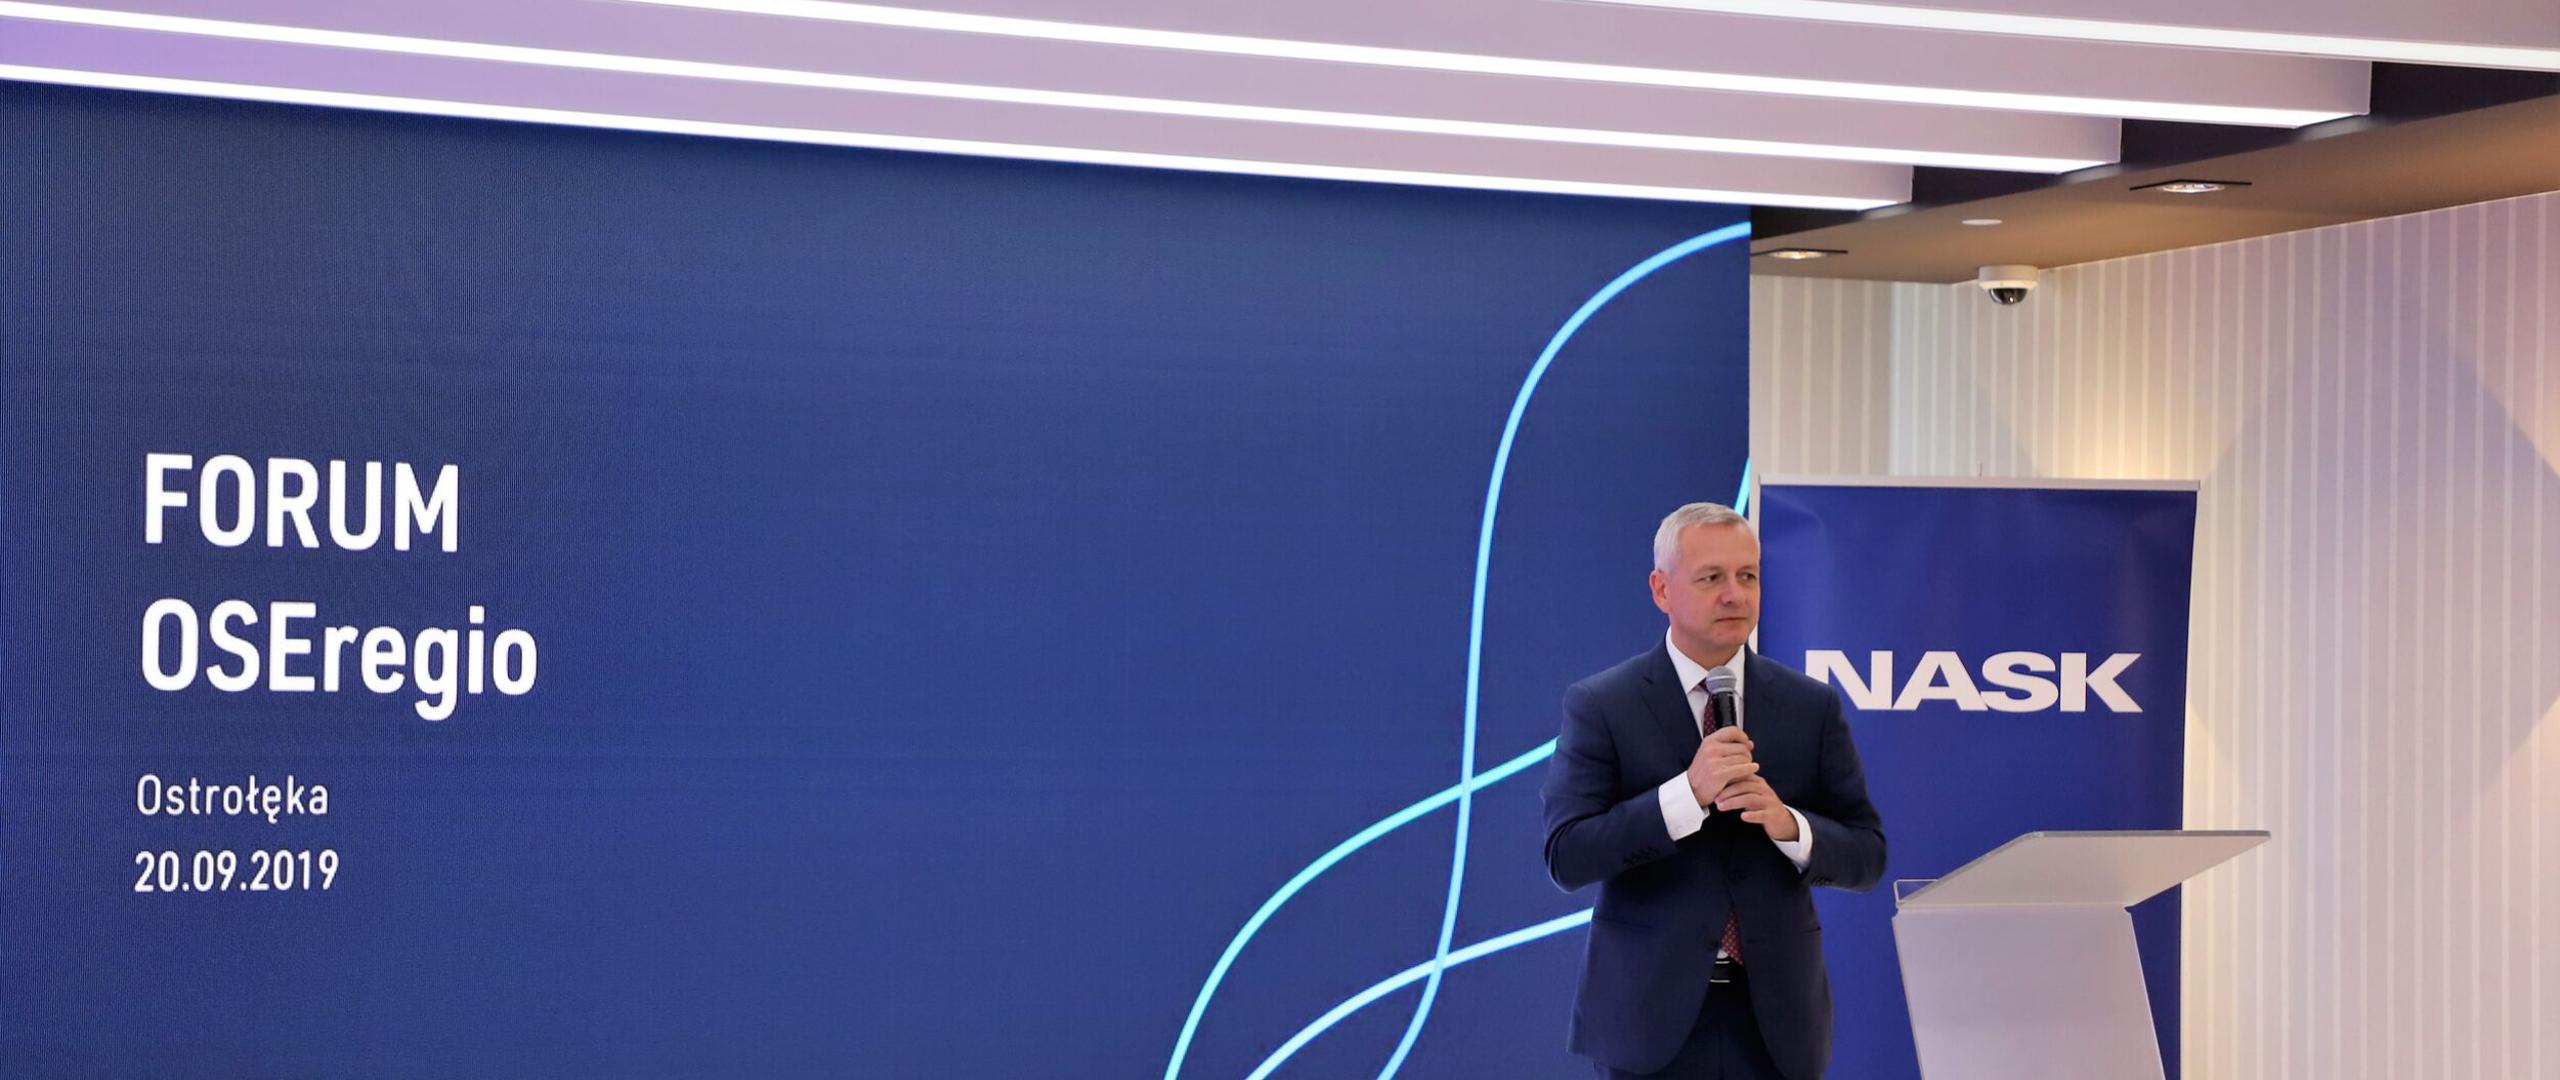 Minister Marek Zagórski trzyma mikrofon w rękach stojąc na tle ekranu, na którym wyświetla się nazwa i data wydarzenia oraz roll-upu z logotypem NASK.